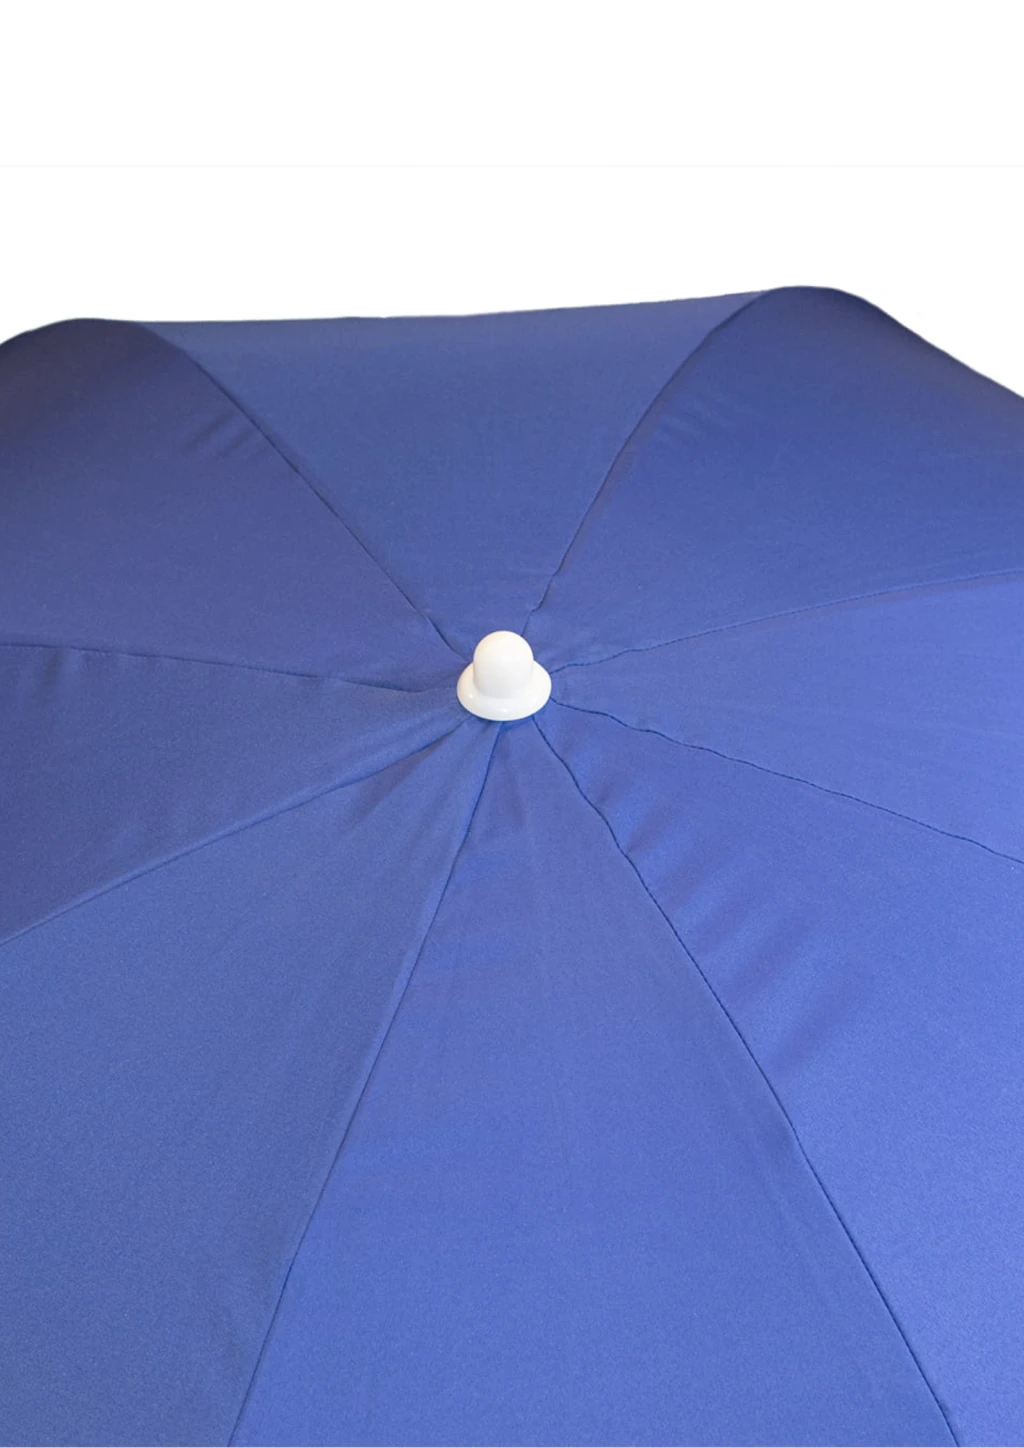 Зонтик садовый Jumi Garden 240см синий